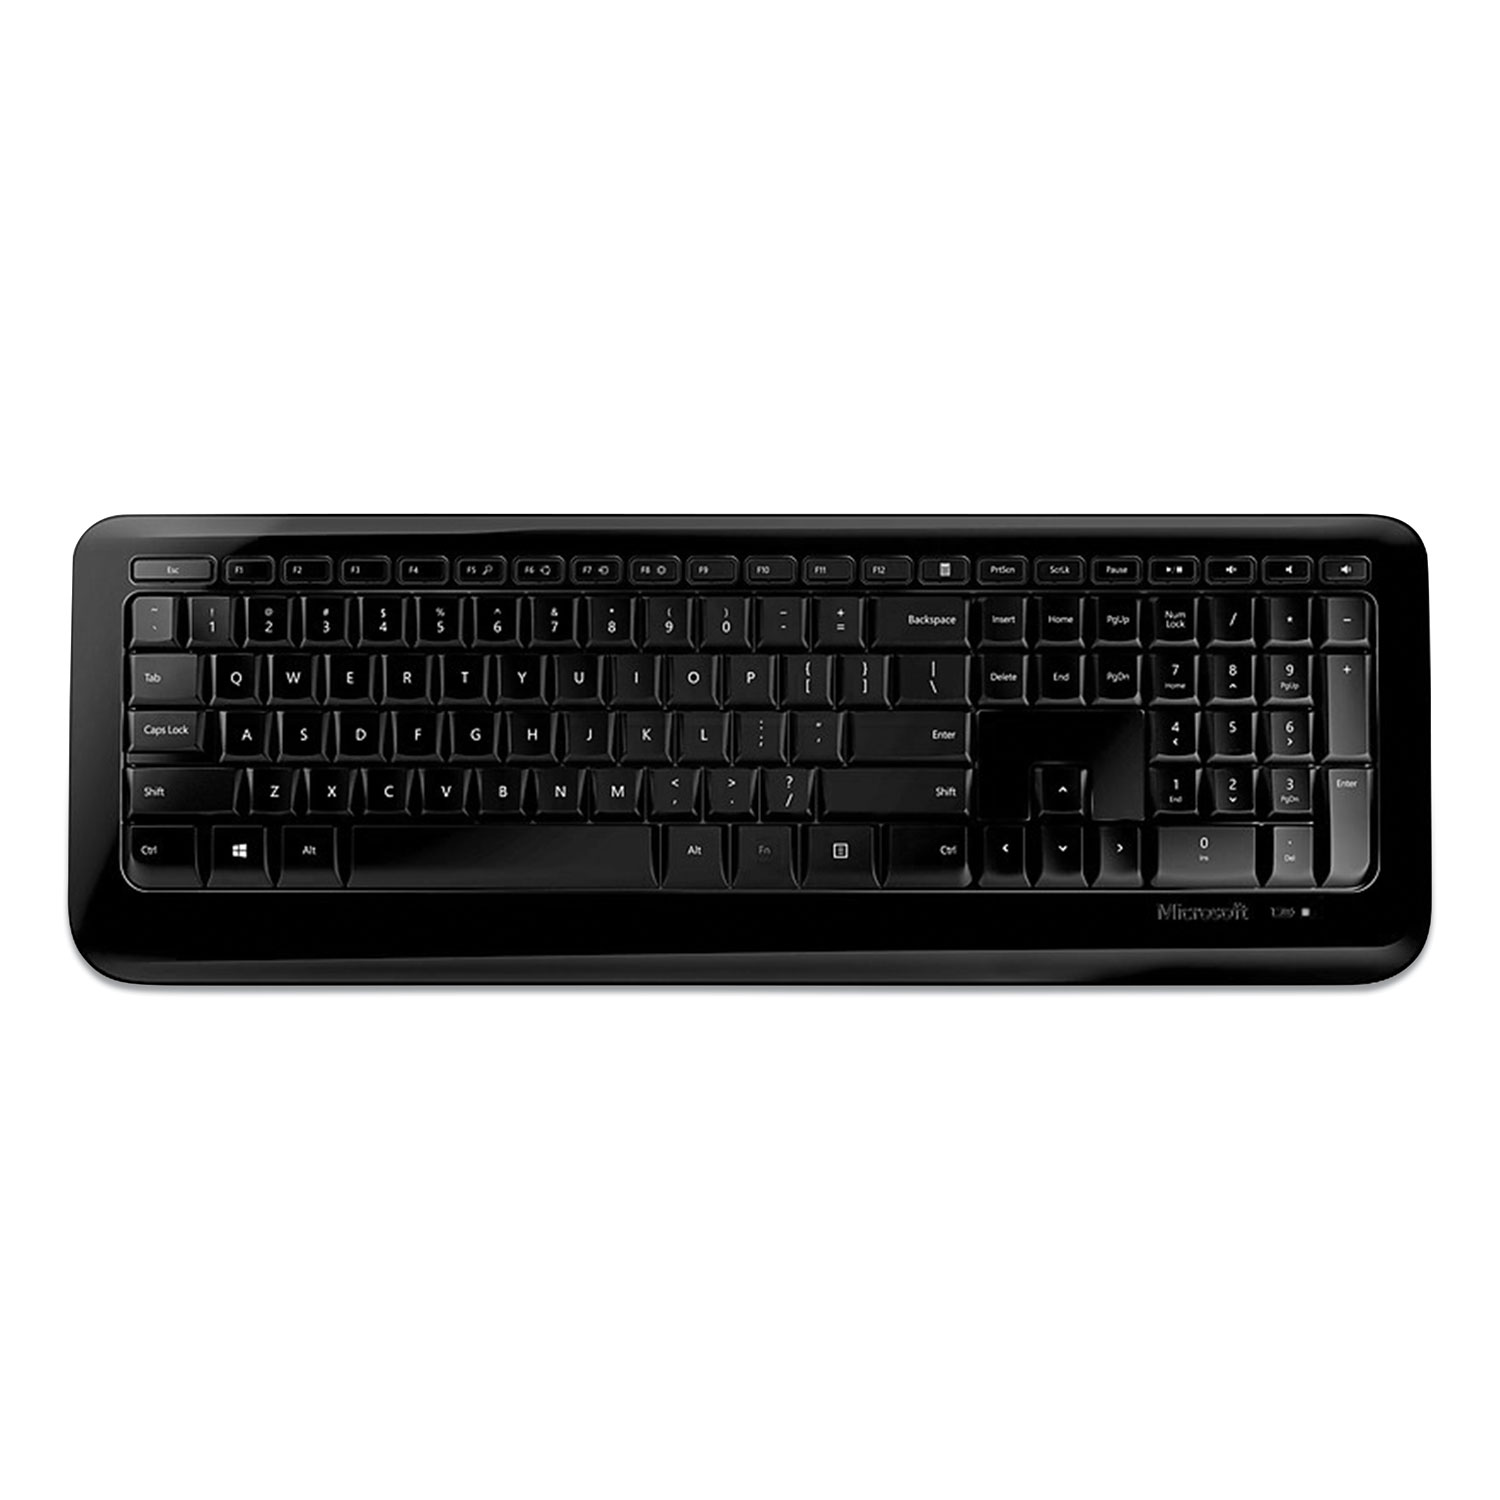  Microsoft PZ3-00001 850 Wireless Keyboard, 104 Keys, Black (MSF1925428) 